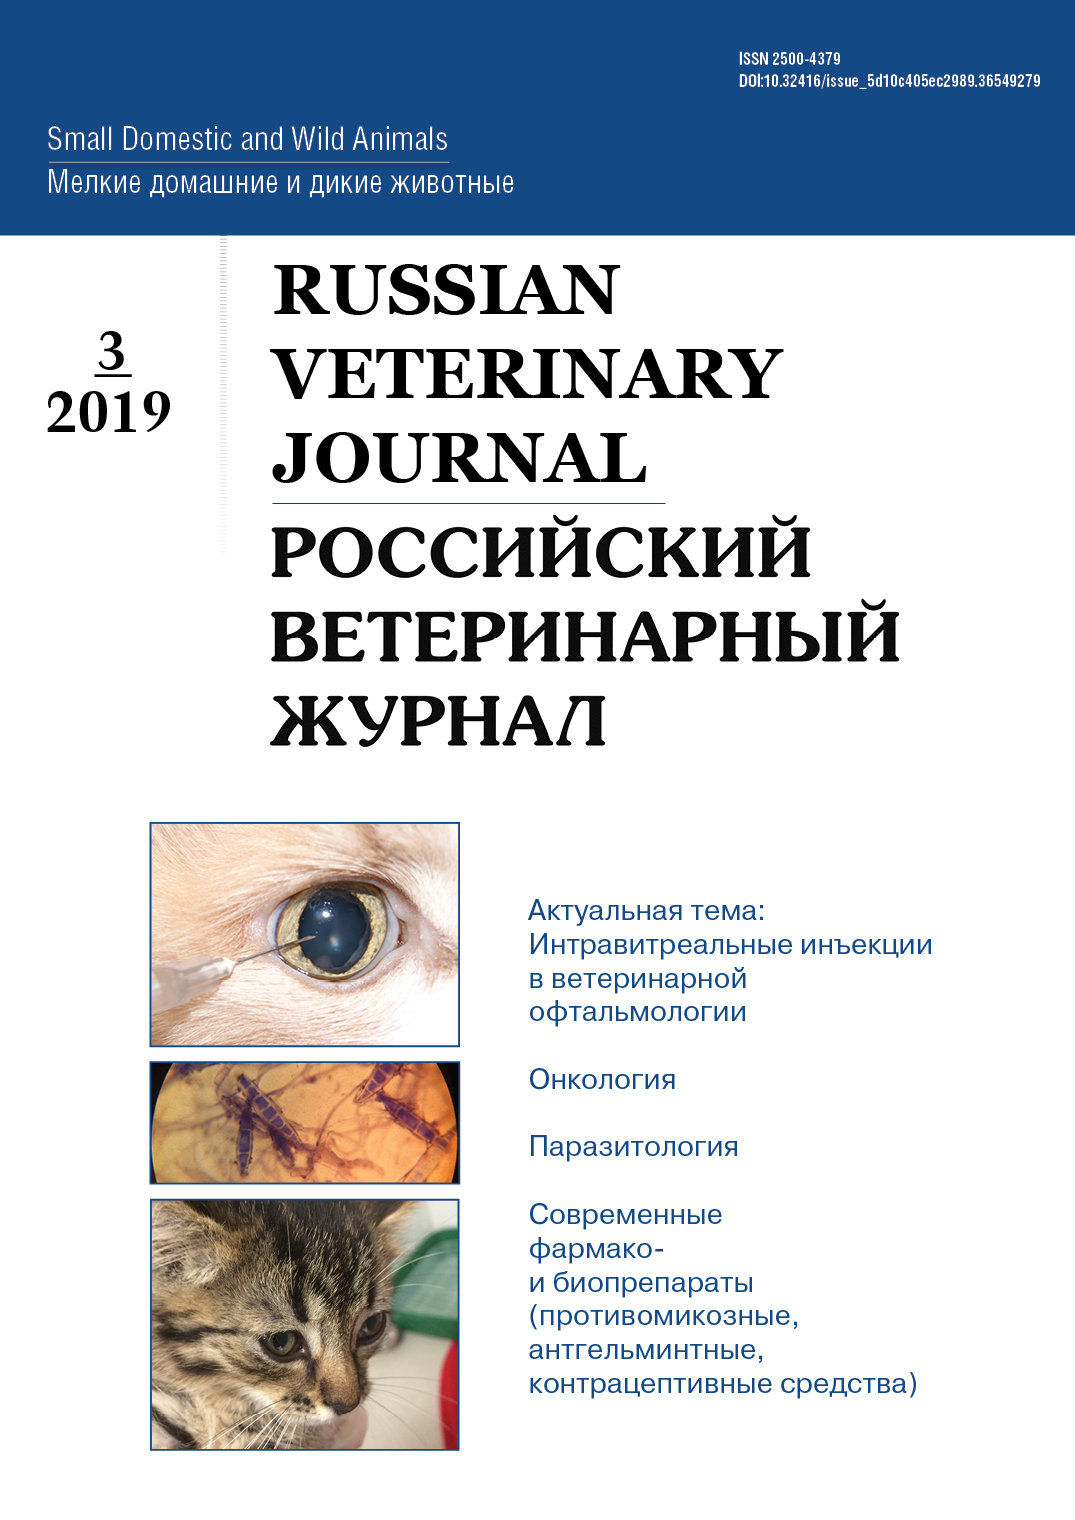             Клинические случаи стронгилоидоза кошек и собак в Московском регионе
    